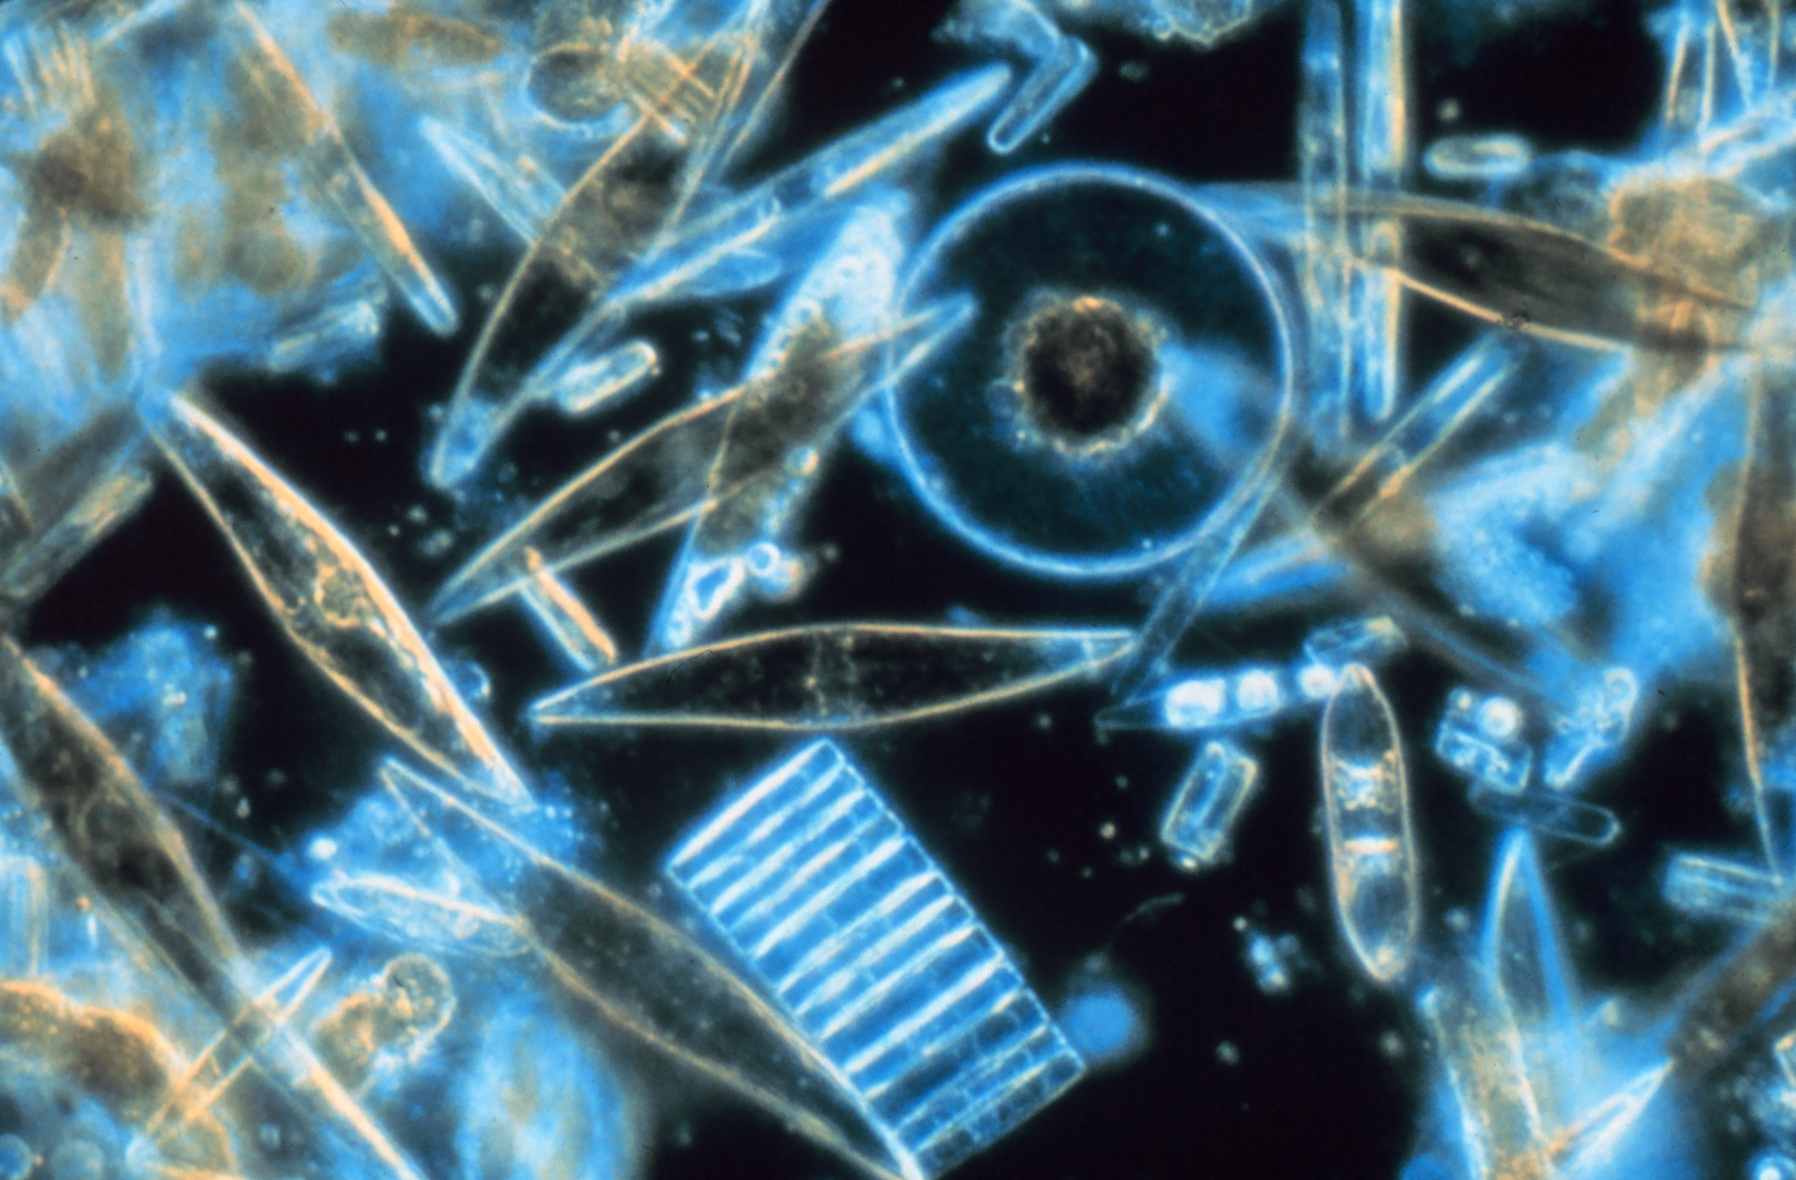 Des diatomées. Ces algues unicellulaires sont un constituant majeur du phytoplancton. © Prof. Gordon T. Taylor, Stony Brook University corp2365, NOAA Corps Collection, domaine public